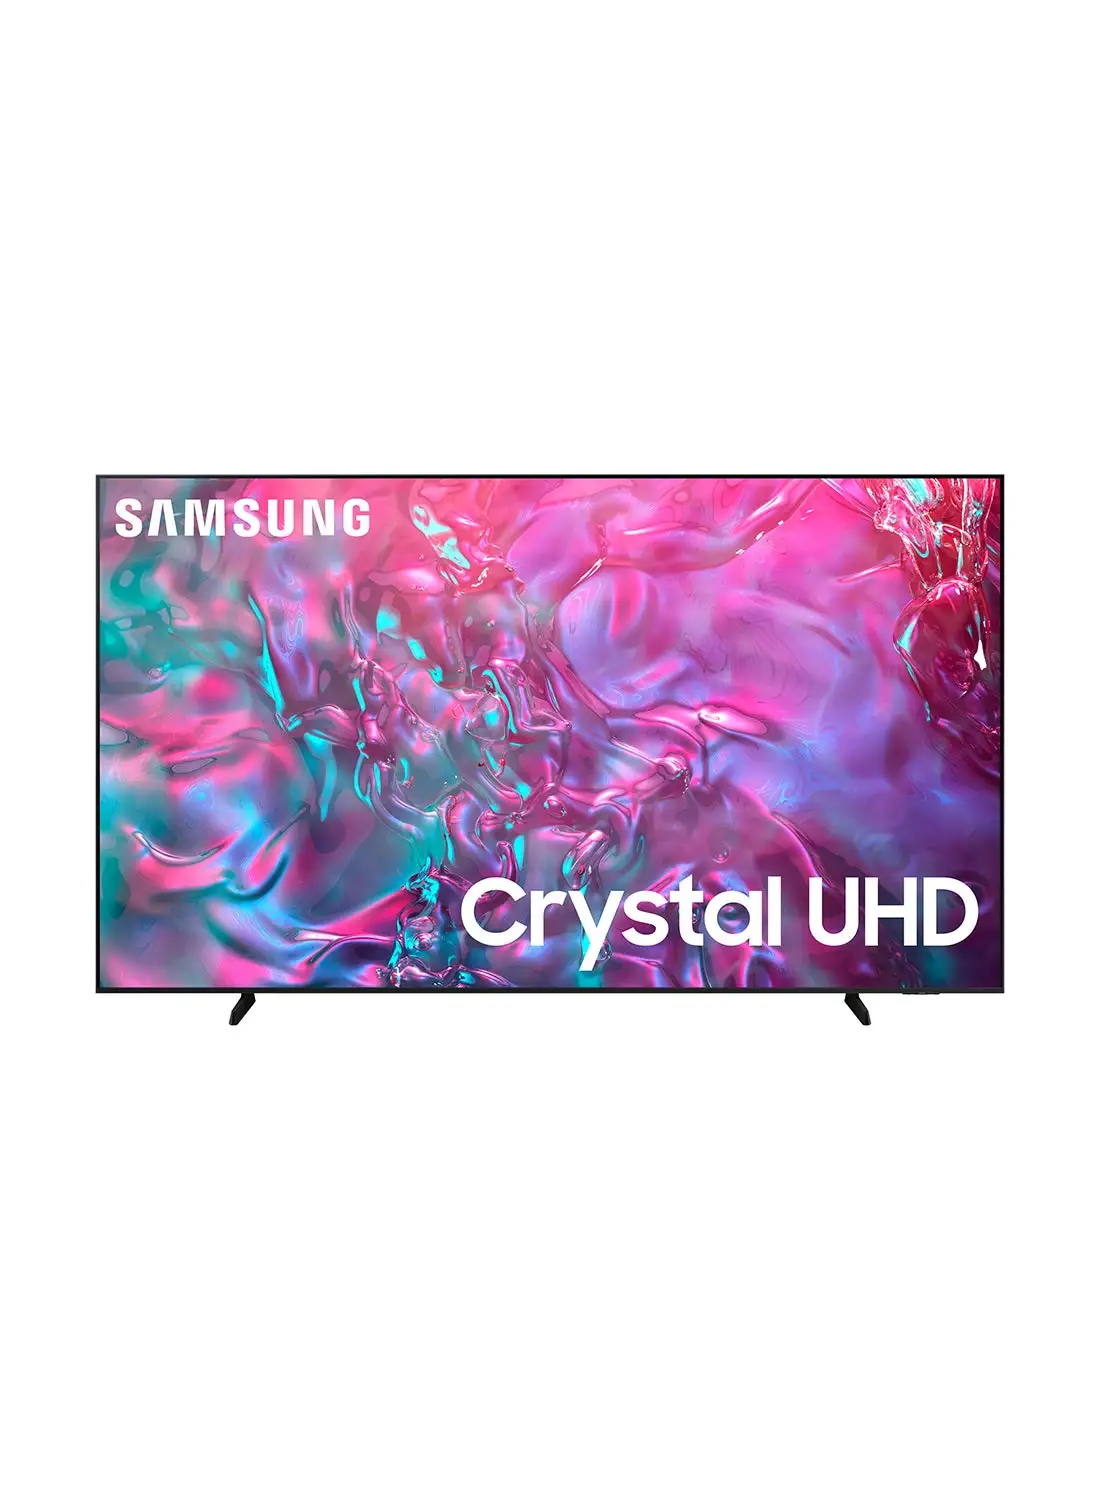 Samsung Smart TV, Super Big TV, Crystal UHD, DU9000, 98 Inch, 2024, Supersize Picture Enhancer, Motion Xcelerator 120Hz, Tizen OS, Q-Symphony UA98DU9000UXZN Graphite Black